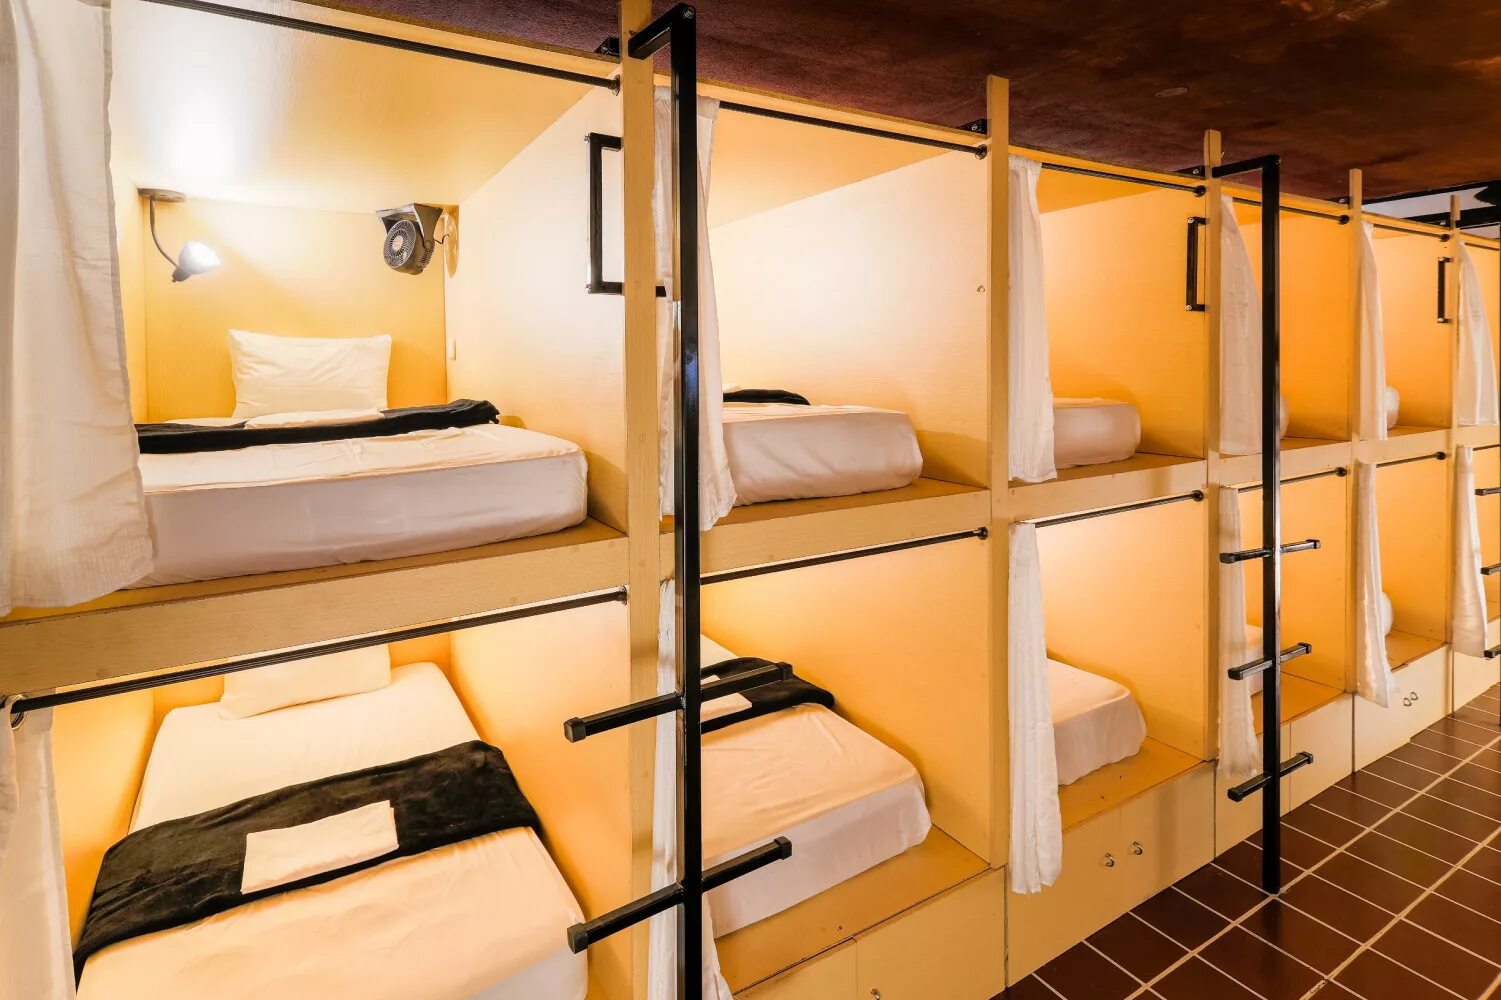 Капсульный хостел. Капсульные кровати для хостела. Отель капсульного типа. Капсулы для хостела. Отдых общежитие